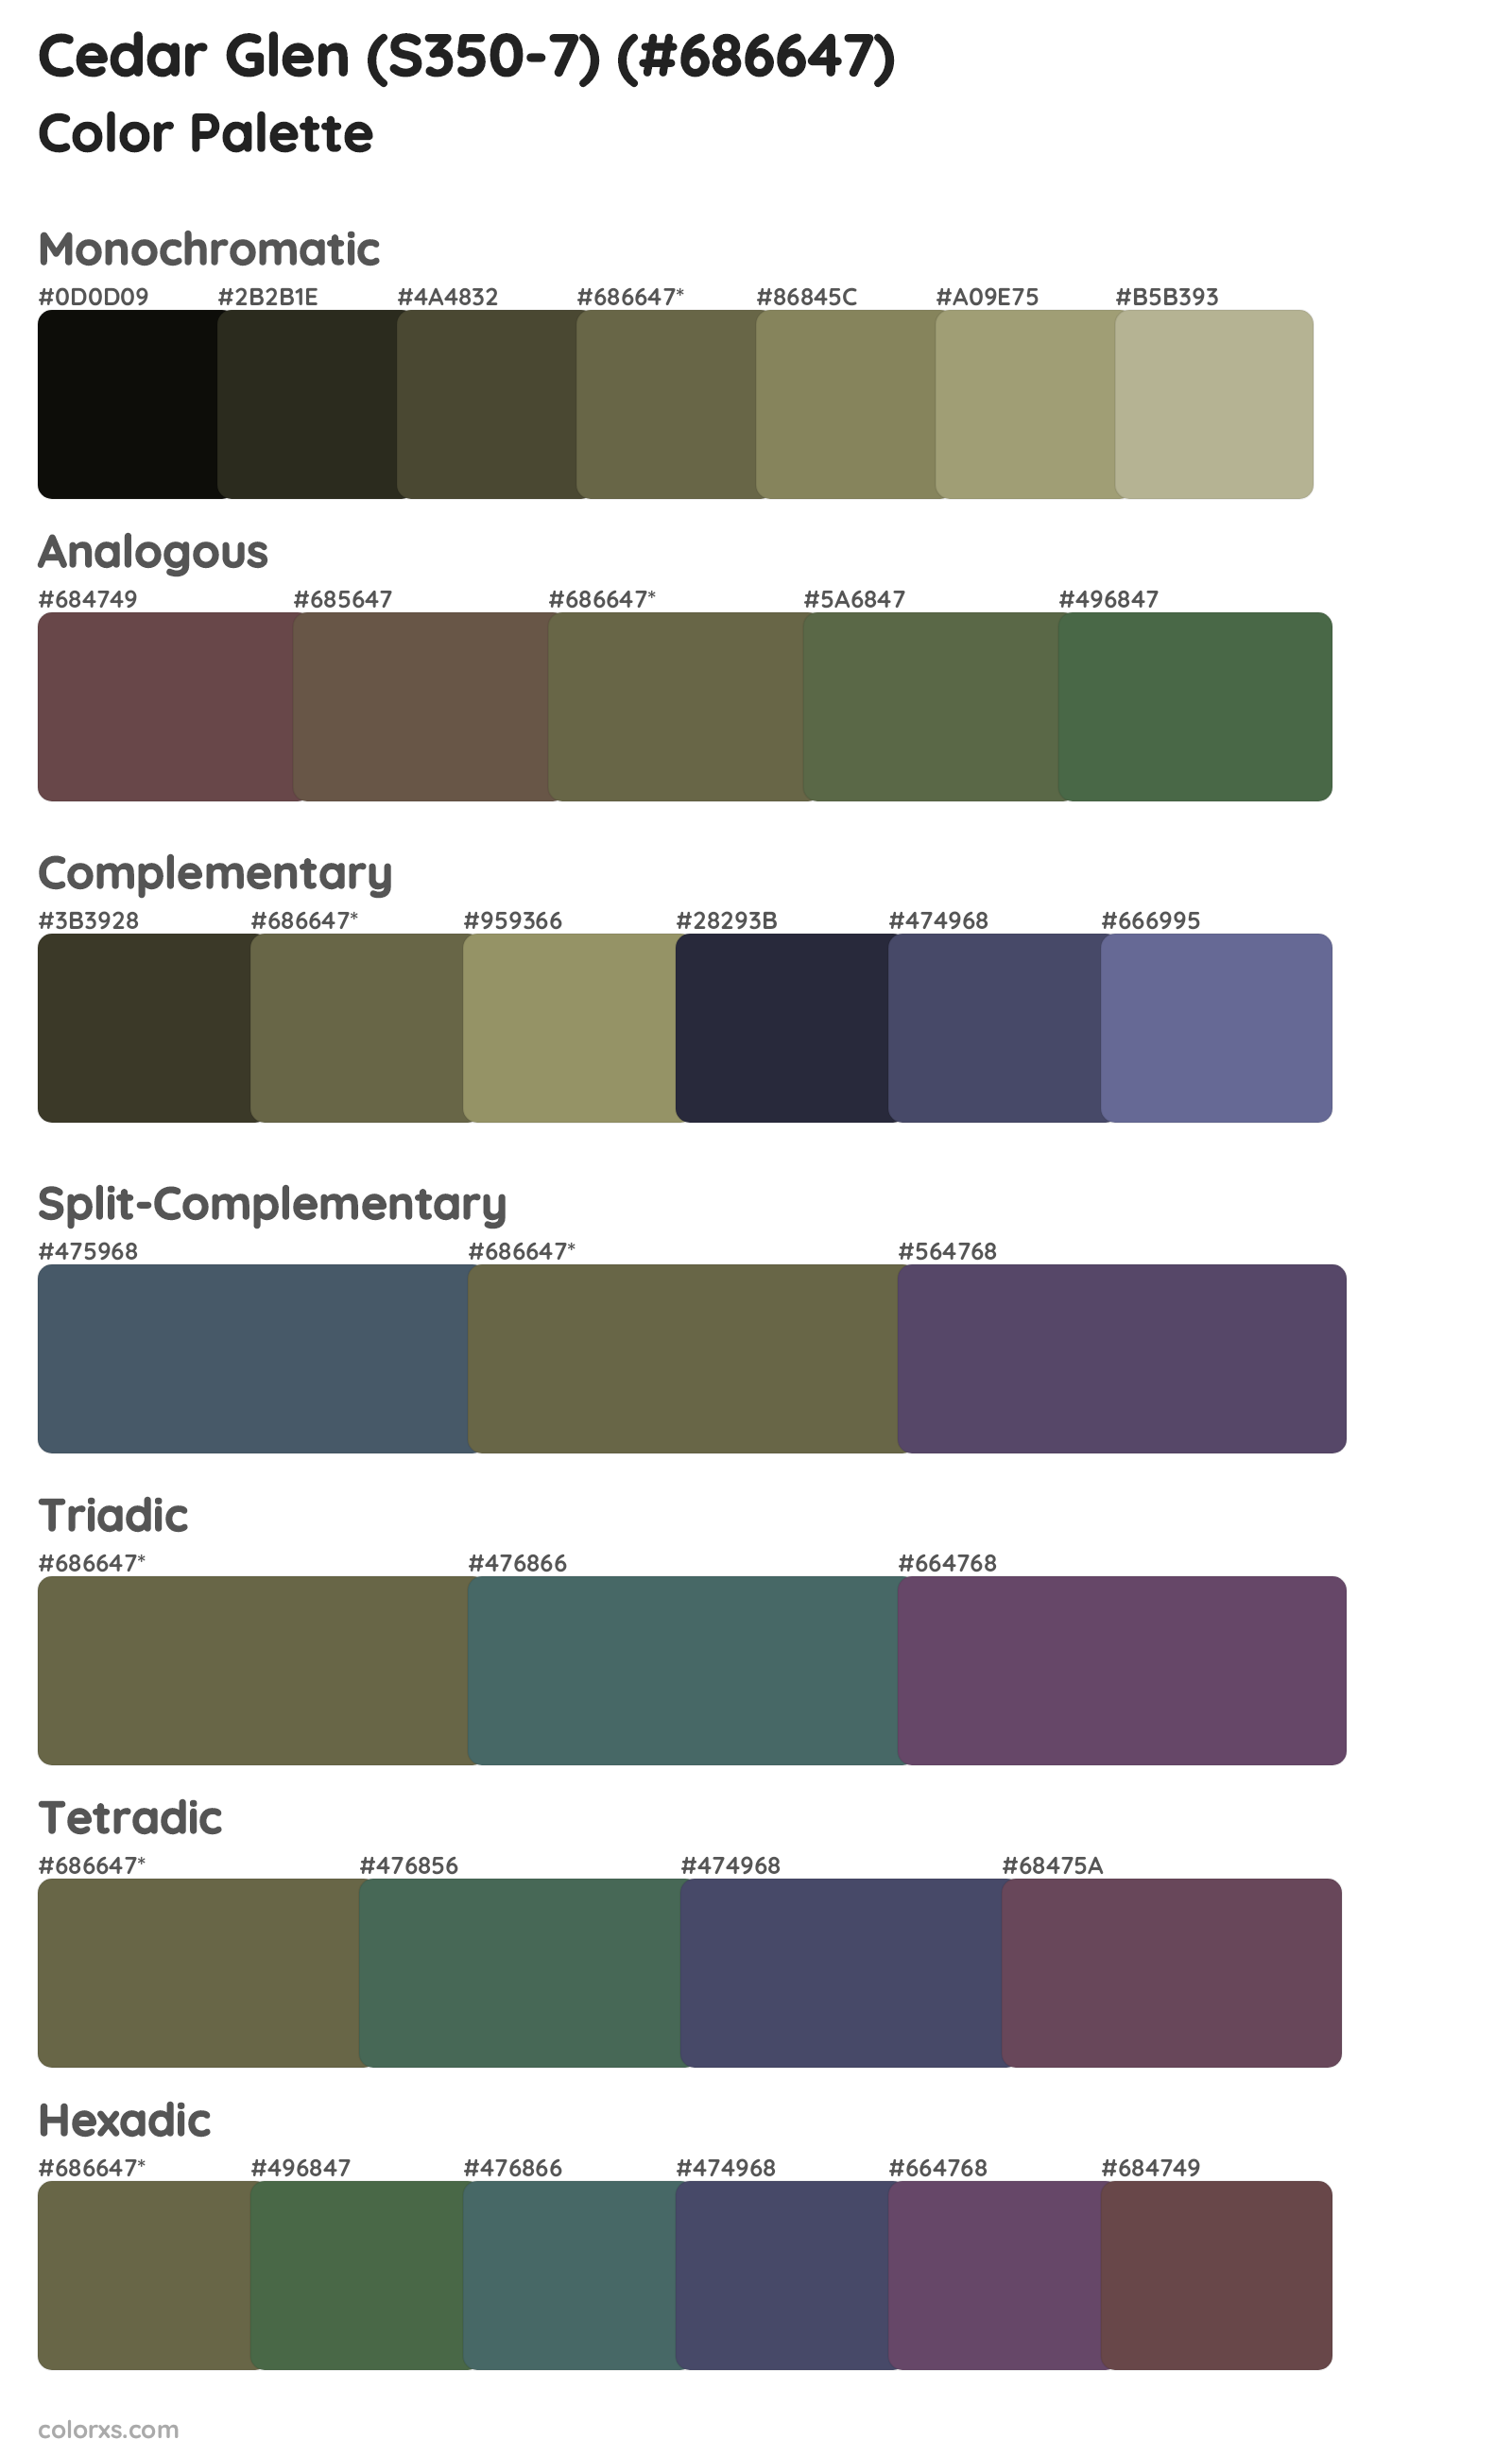 Cedar Glen (S350-7) Color Scheme Palettes